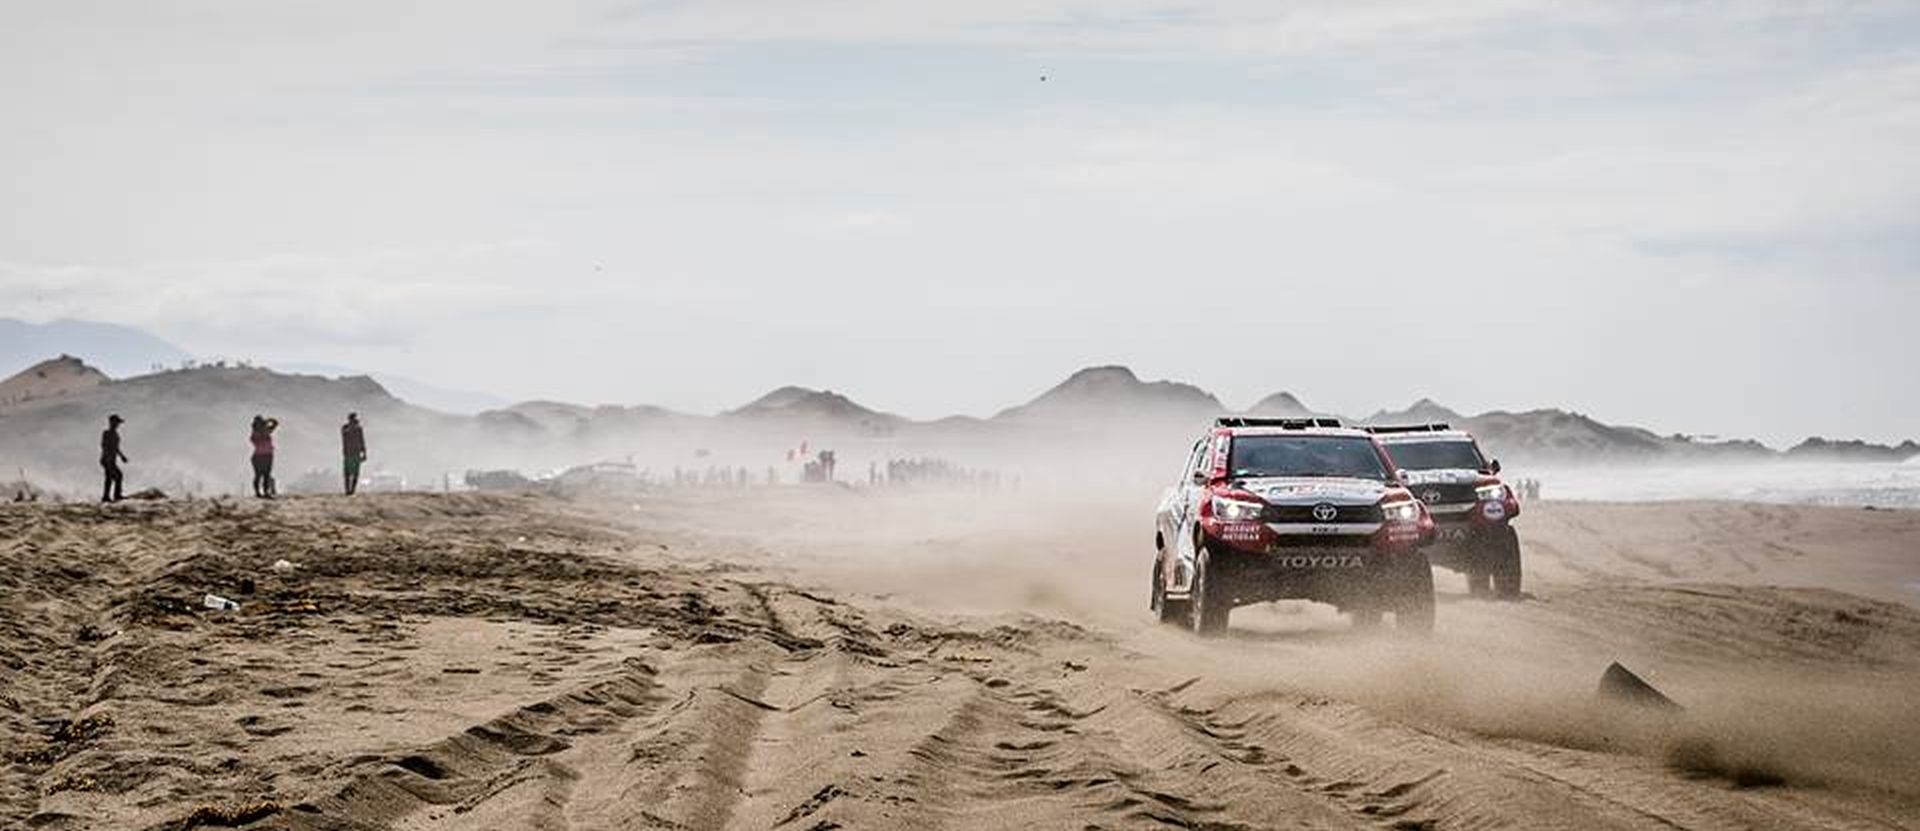 Dakar 2018 - kolejny dzień na pustyniach Peru